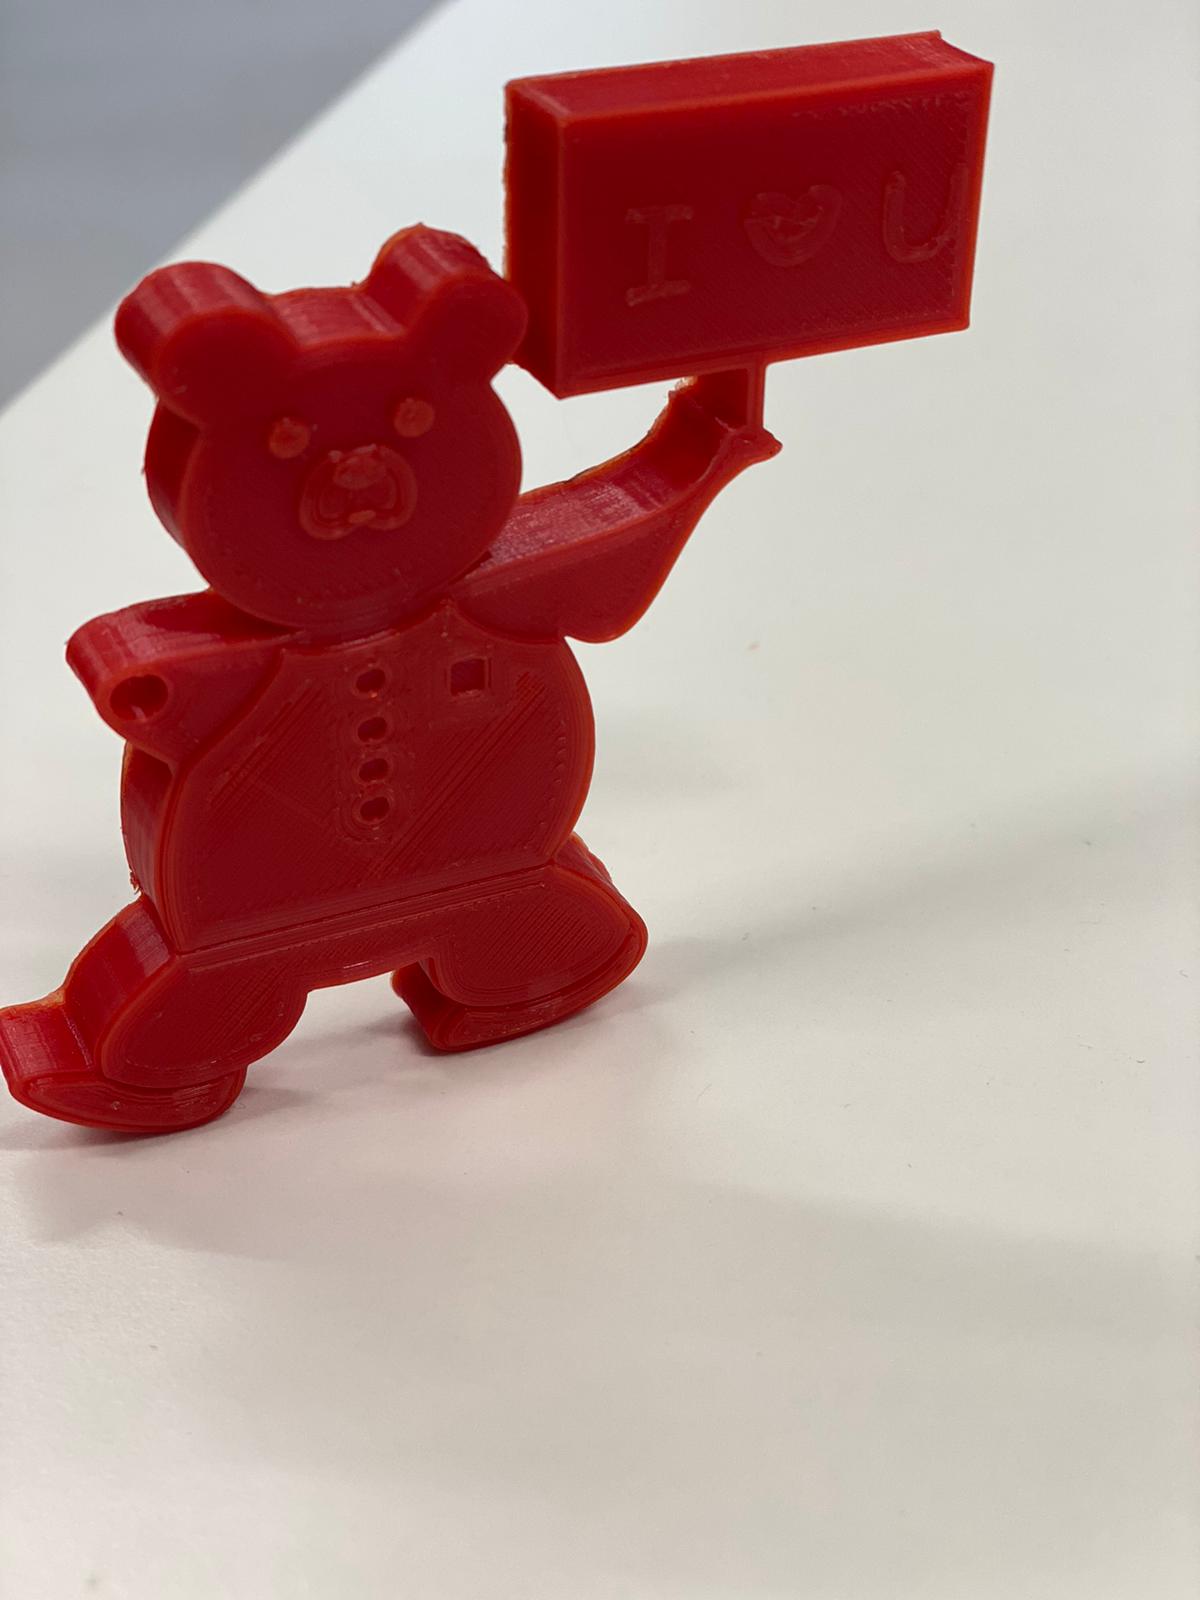 Fynn Teddy Bear Keychain - A Valentine's day gift